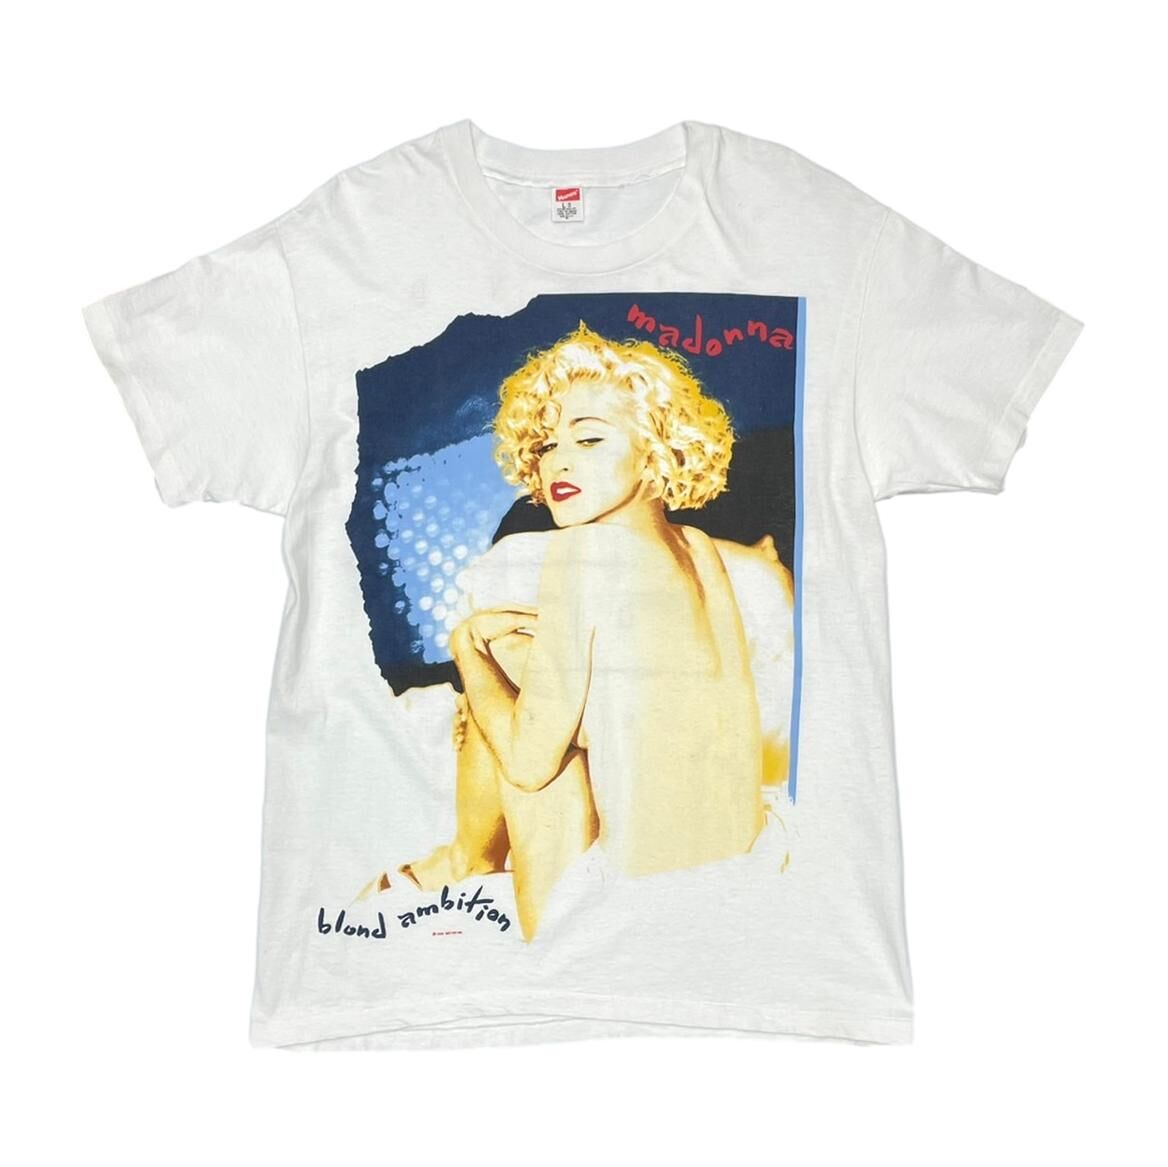 Madonna Blonde Ambition 1990 T-shirtマドンナツアーtシャツ